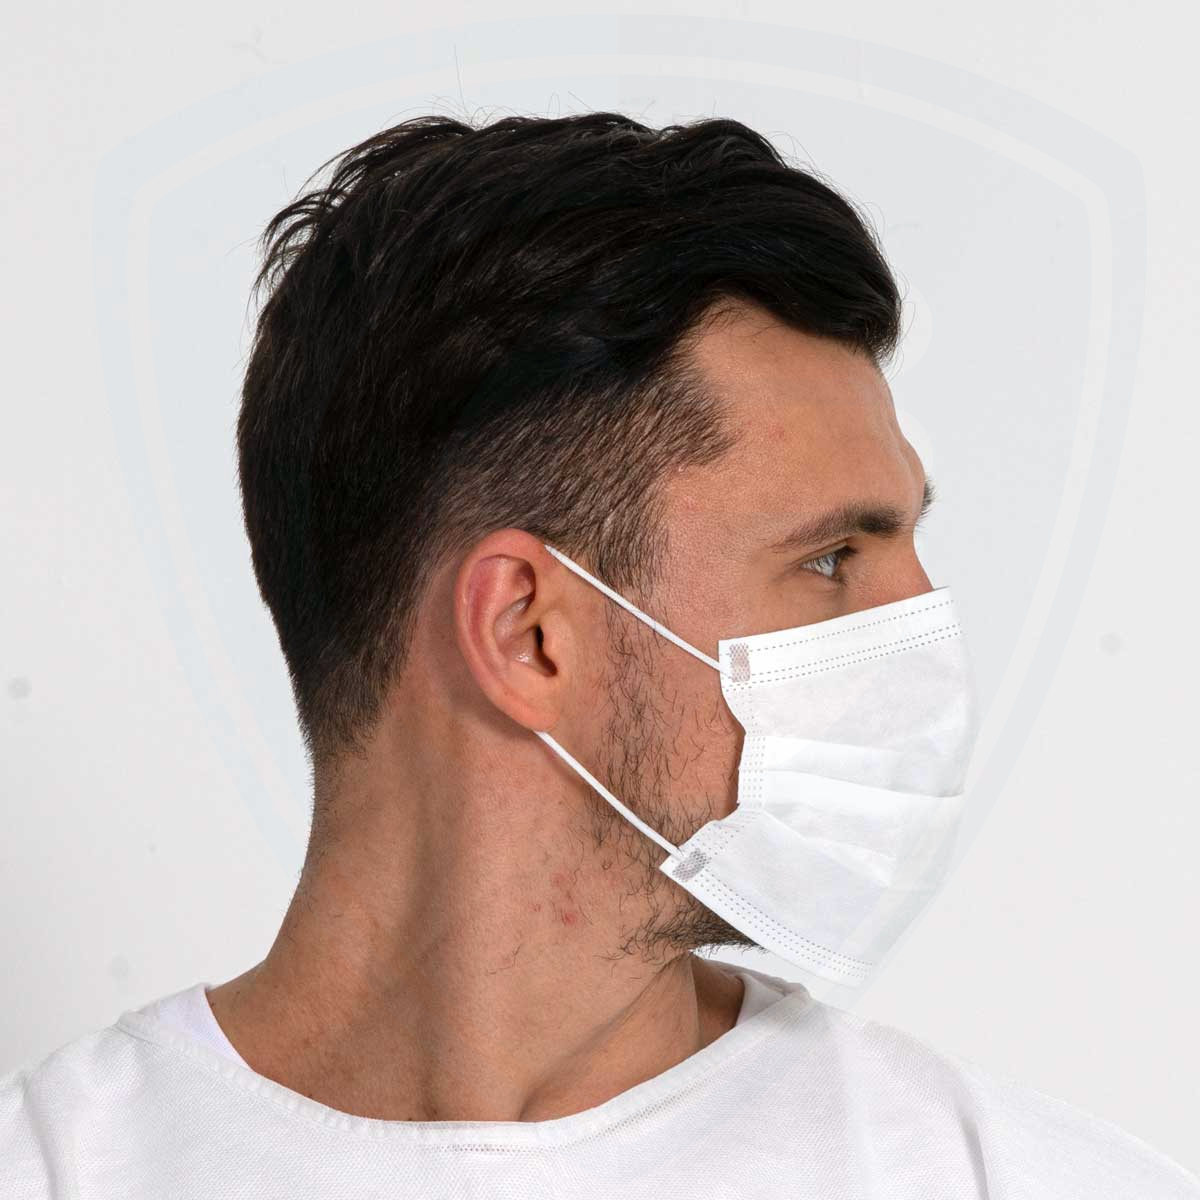 Maschere monouso a 3 strati BFE99 con anelli per le orecchie per uso medico ospedaliero